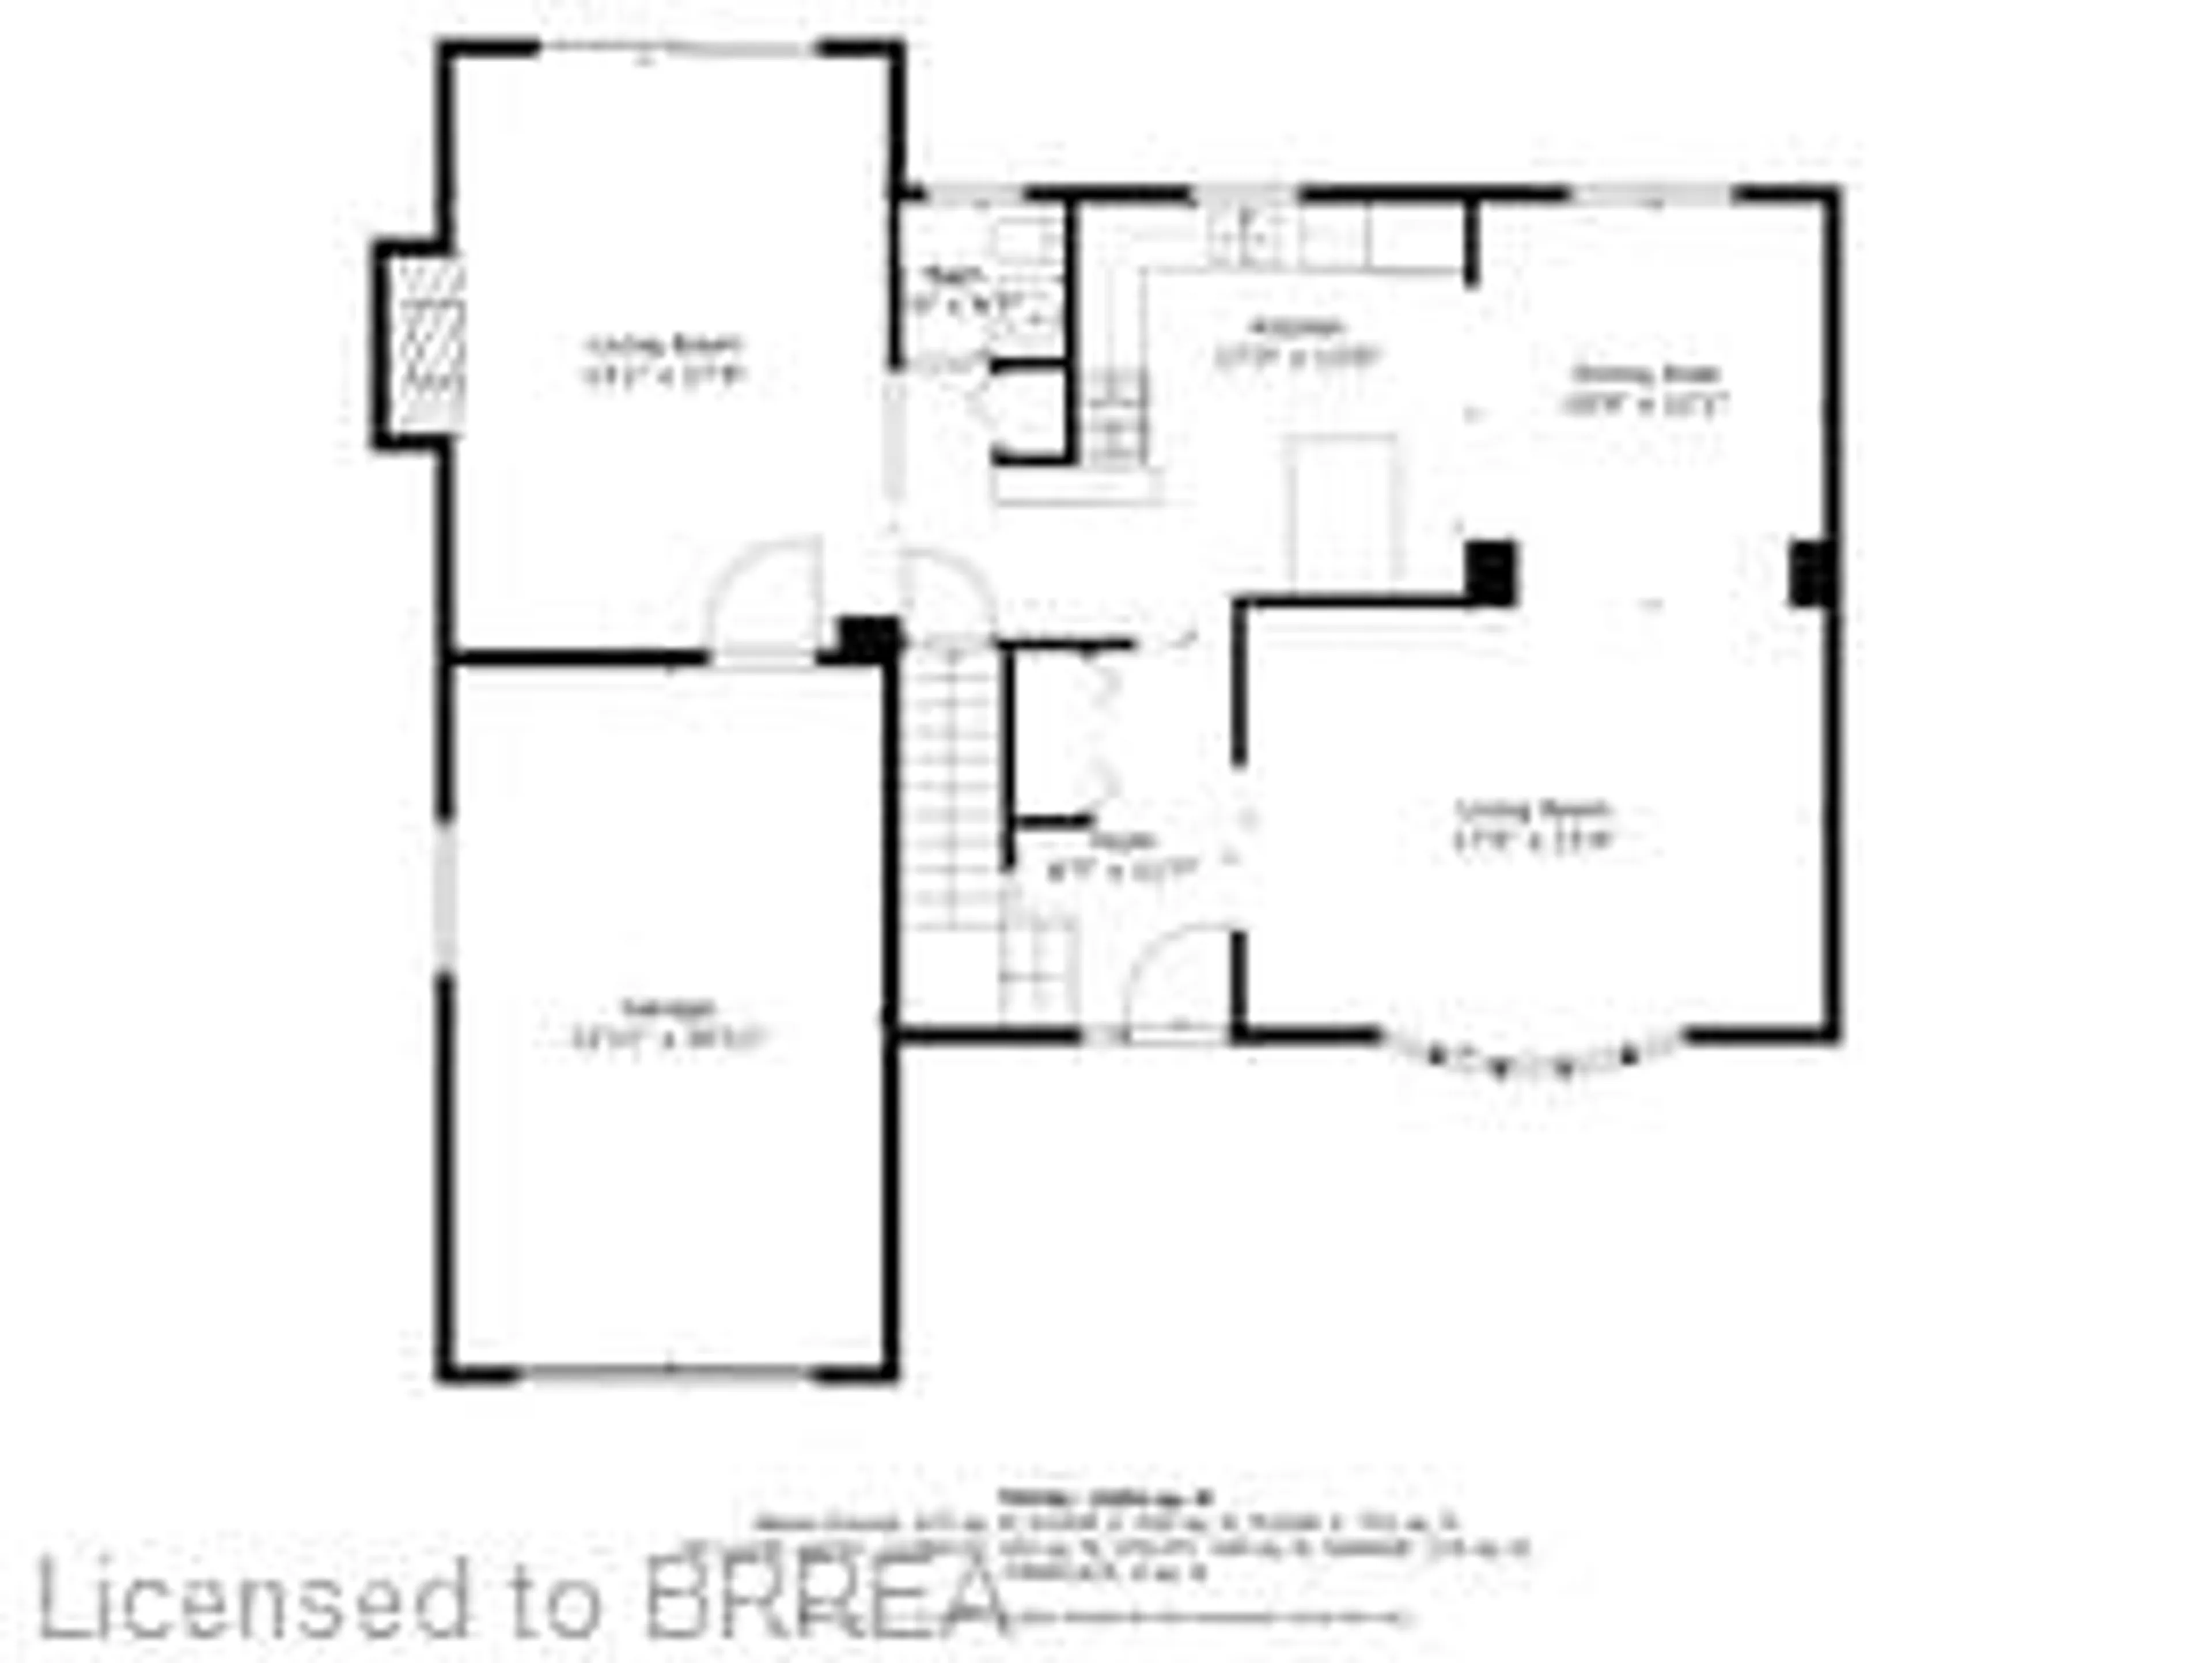 Floor plan for 25 Sky Acres Dr, Brantford Ontario N3R 1P2